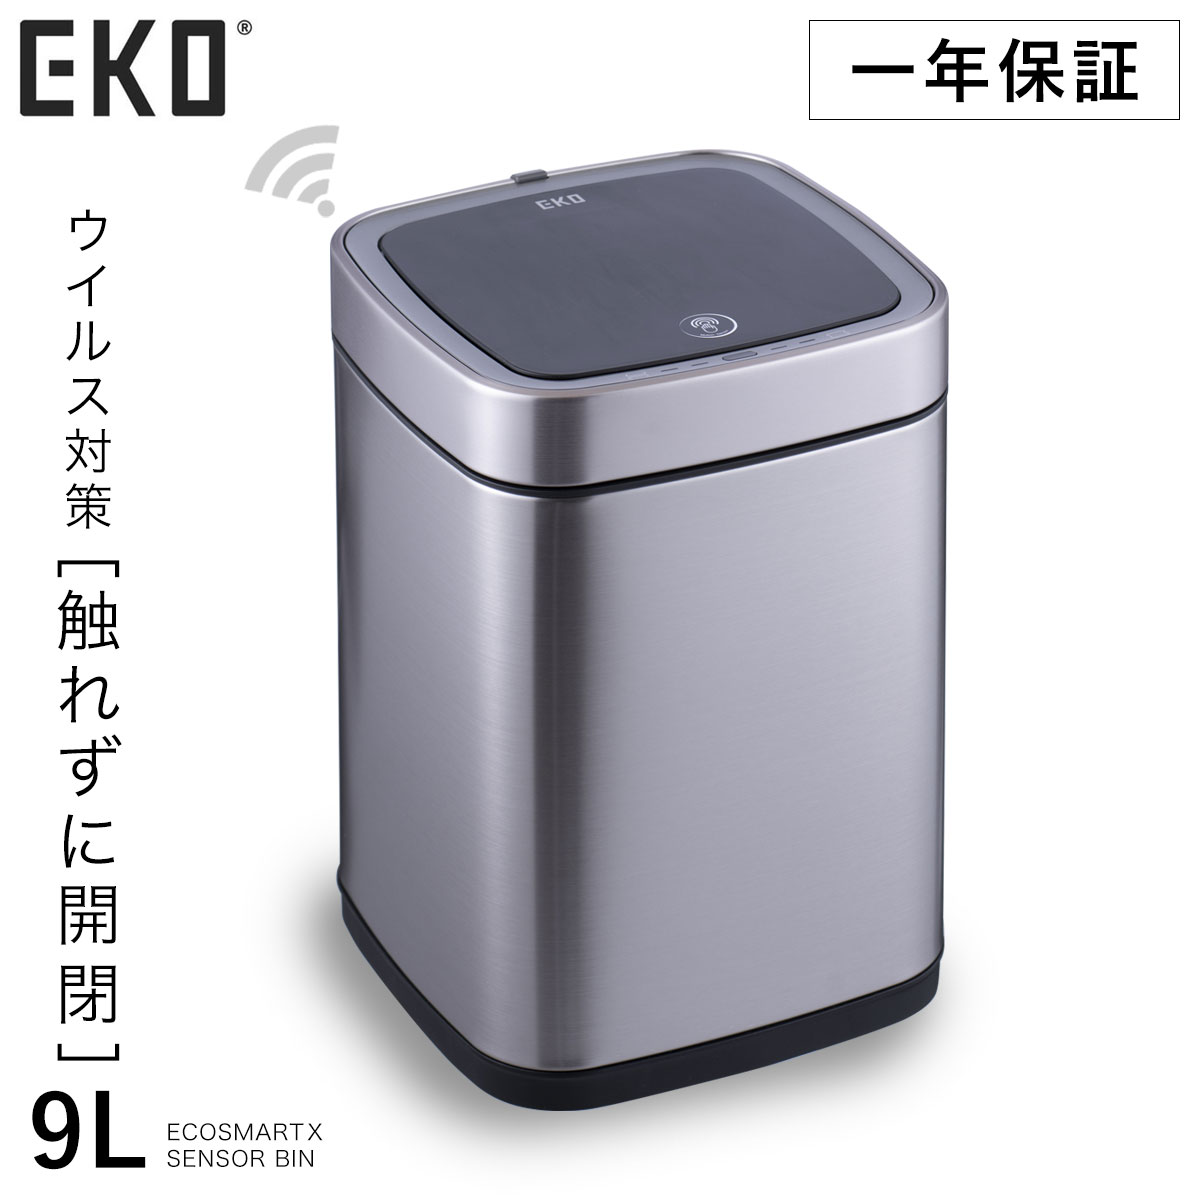 6710円 人気メーカー・ブランド EKO JAPAN ドコX充電式センサービン EK9286RO-9L-WH φ25x33.8cm オゾン発生器付 自動開閉 蓋つき ゴミ箱 正規品 1年保証